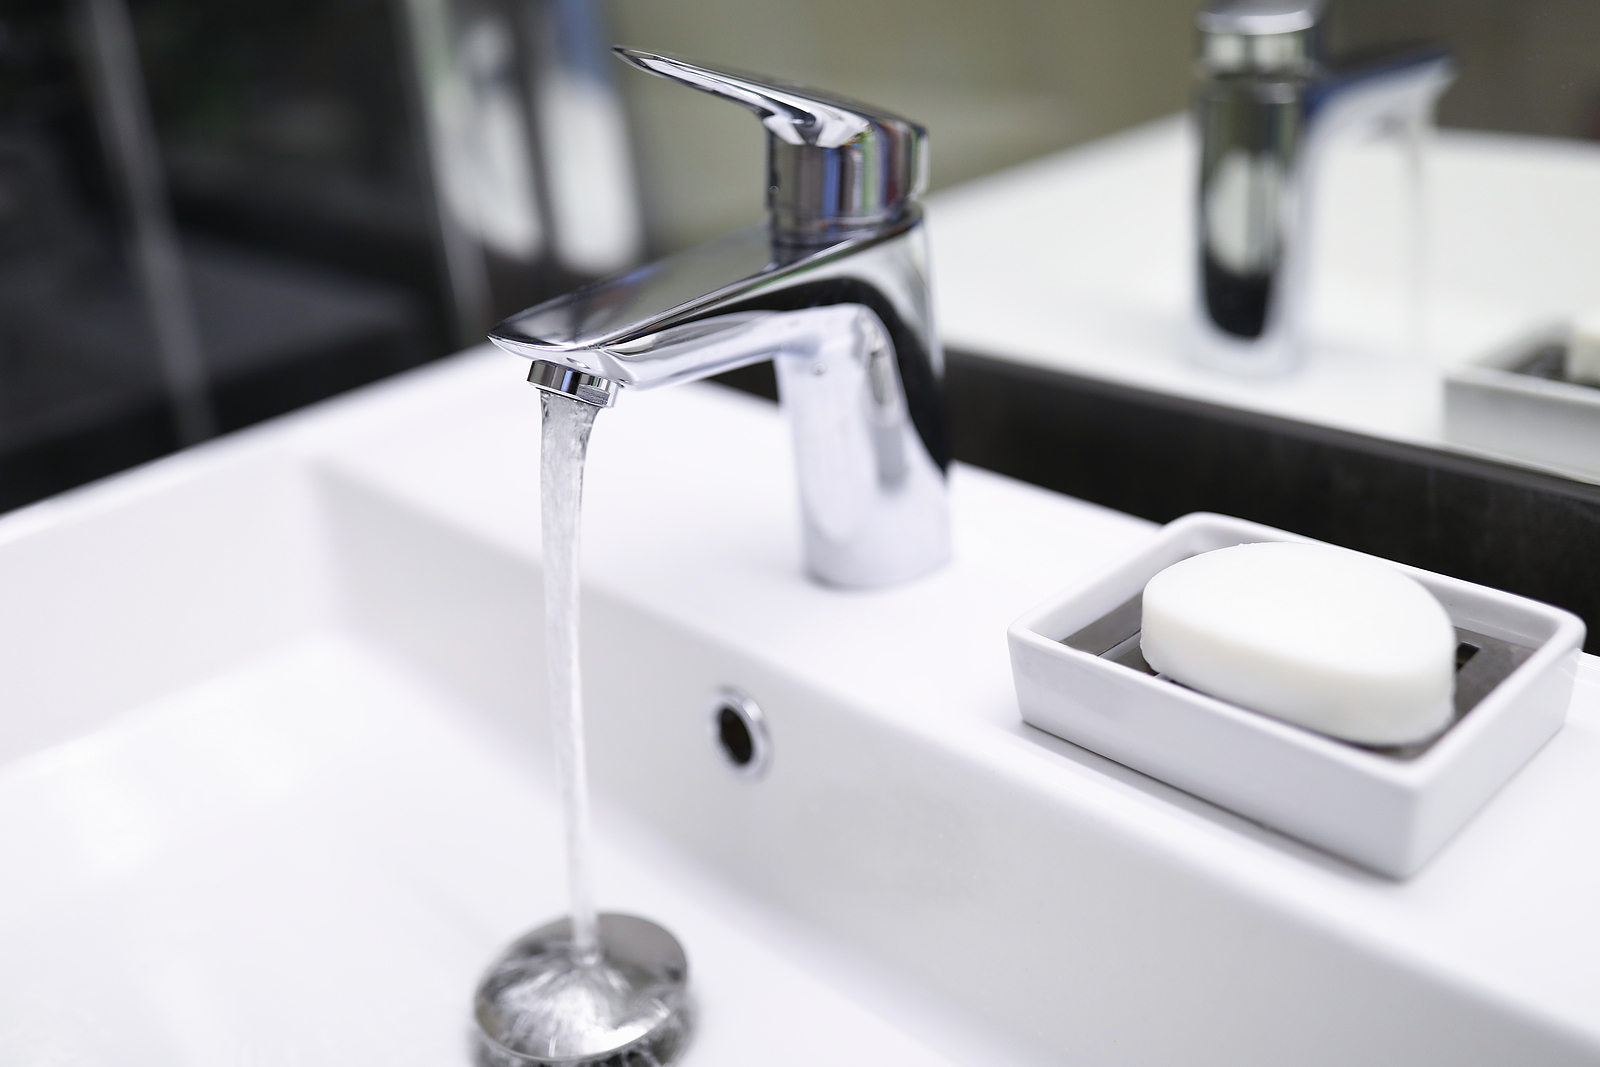 water pressure too hight at bathroom sink